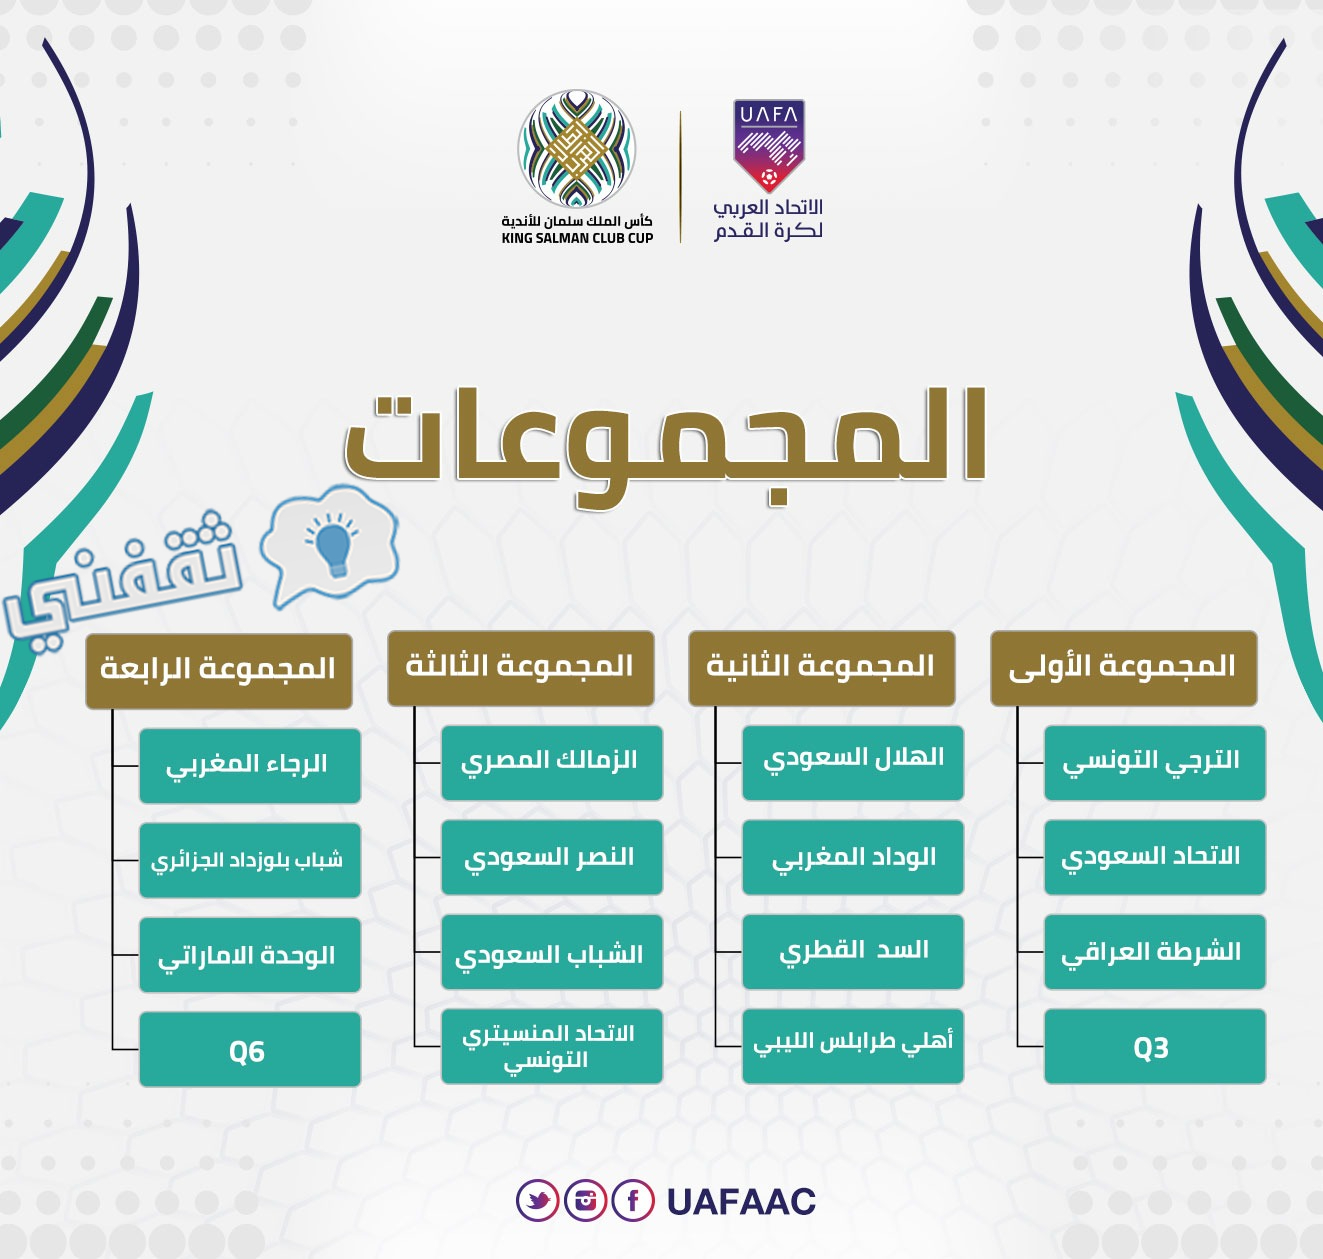 الشكل الحالي للمجموعات الأربع في دوري أبطال العرب بعد انضمام الاتحاد المنستيري الدوري إلى المجموعة الثالثة